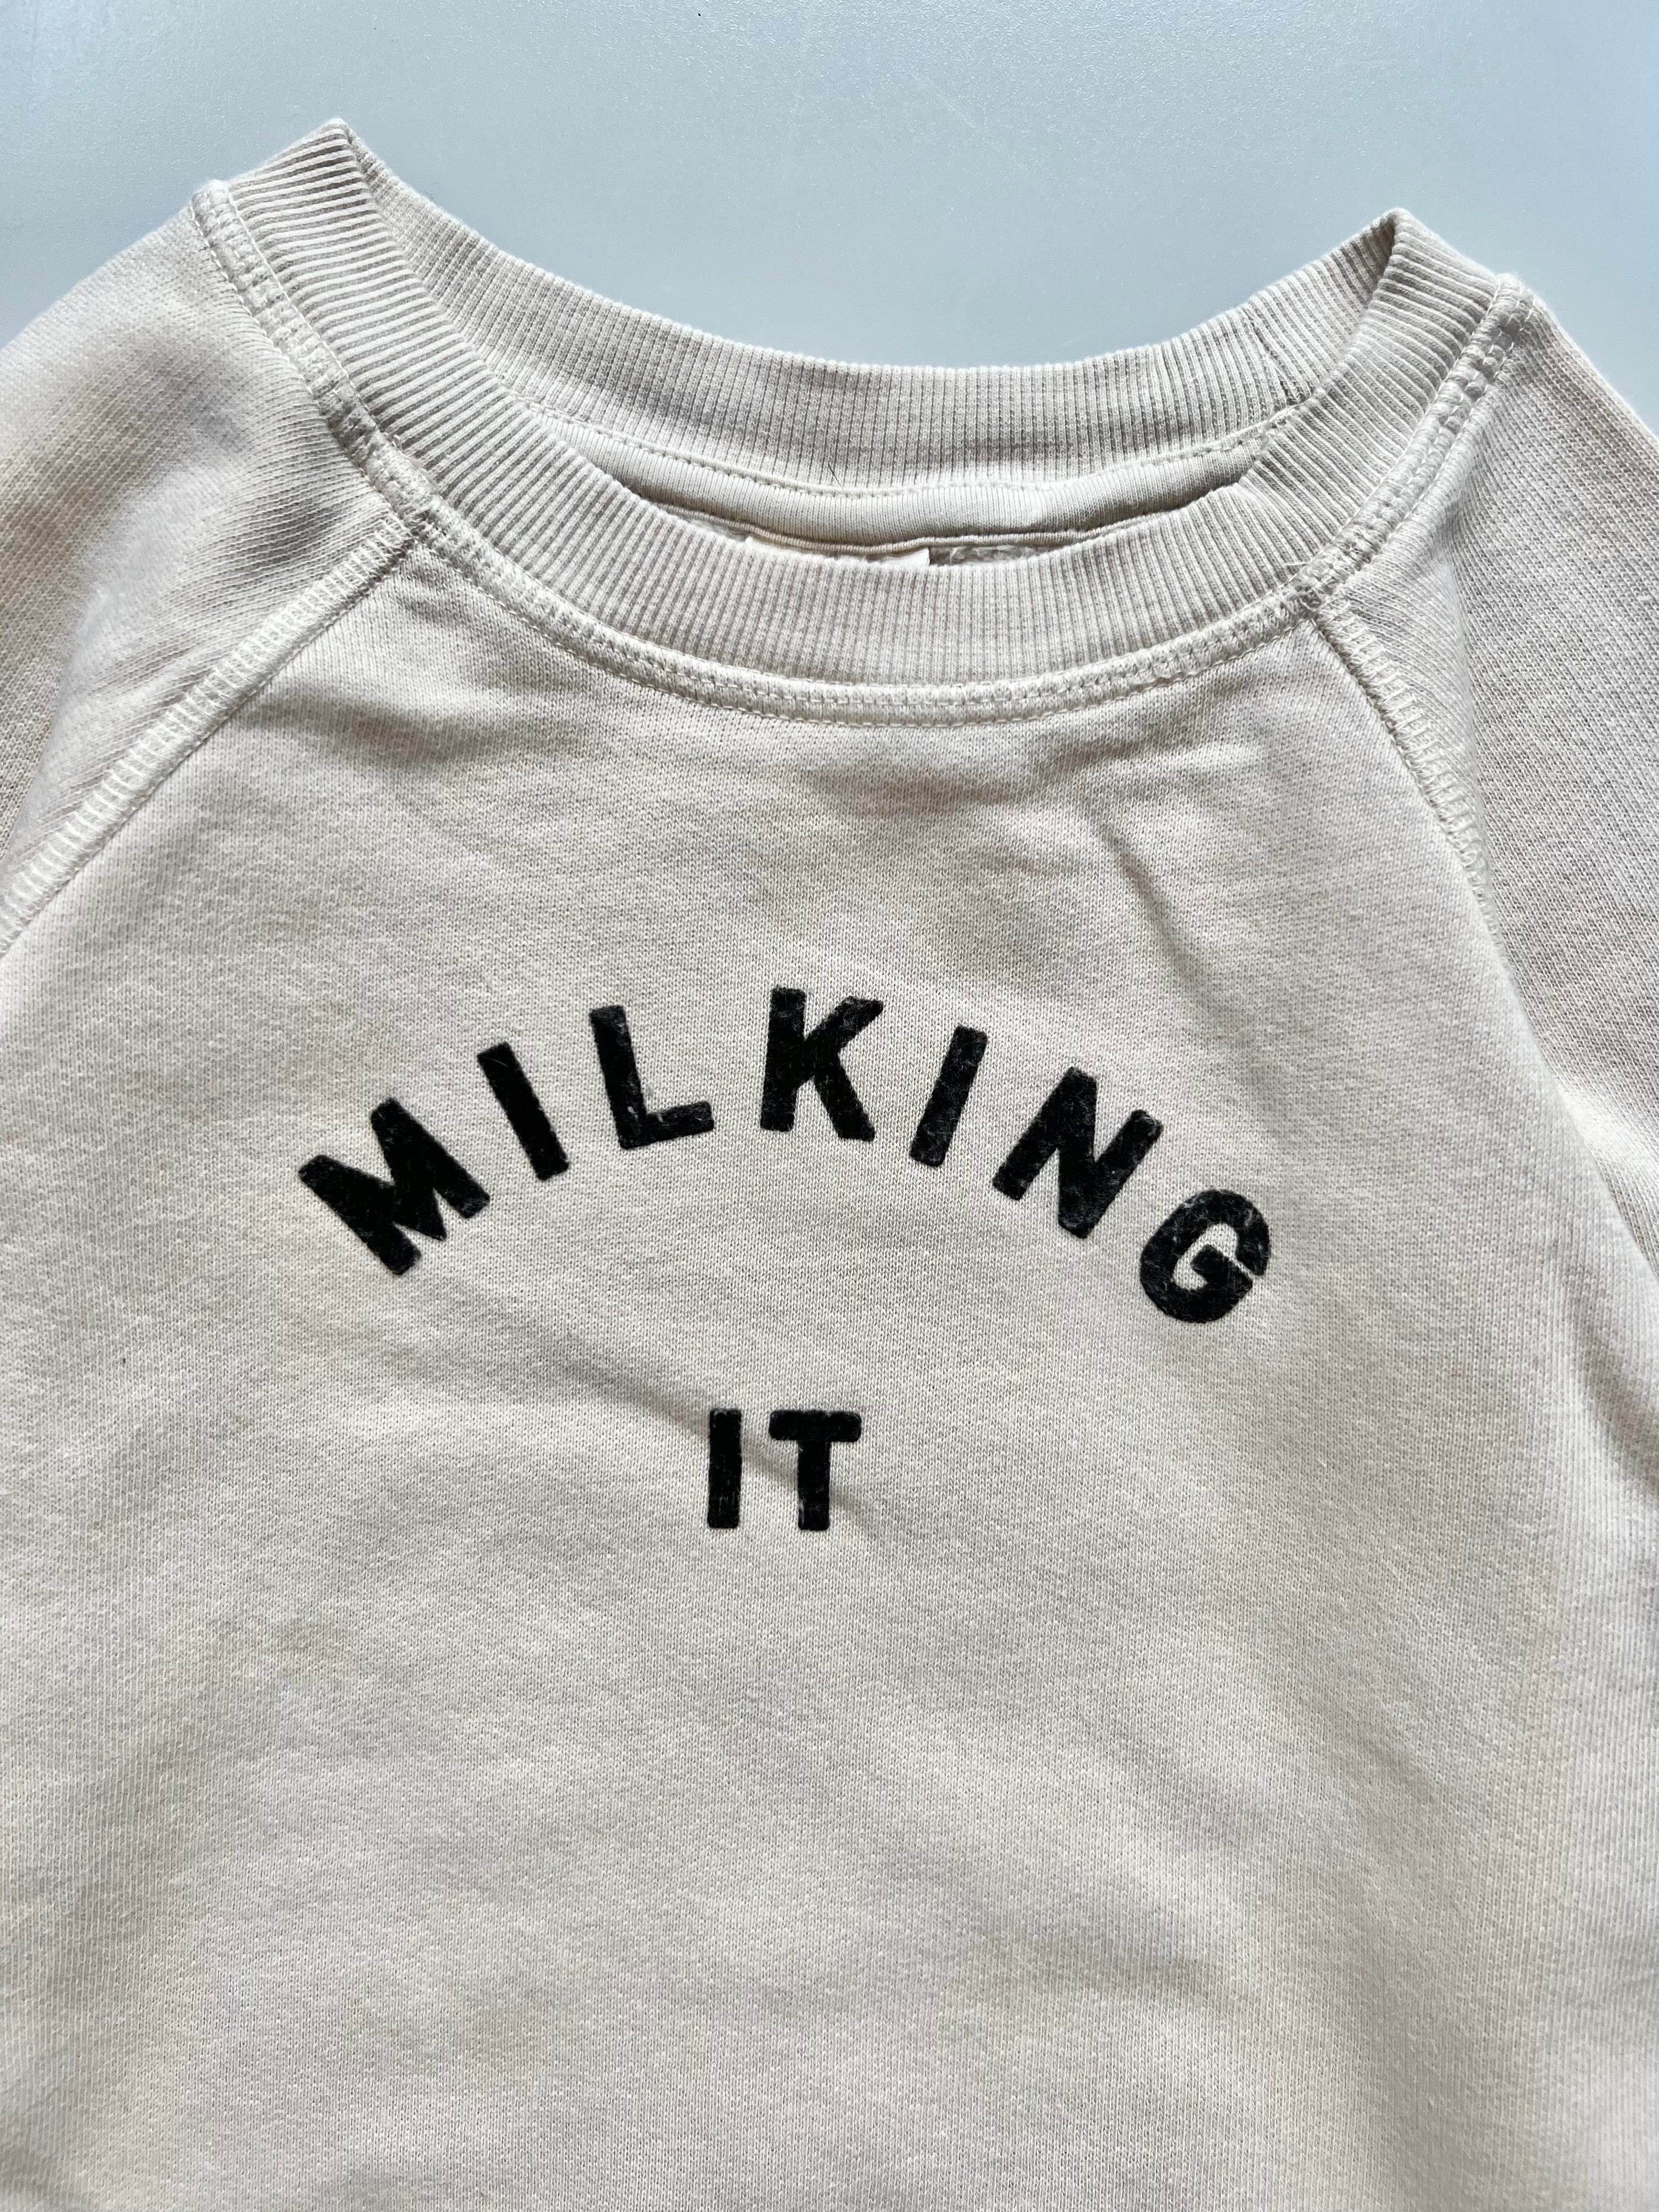 Claude & Co Milking It Sweatshirt Age 2-4